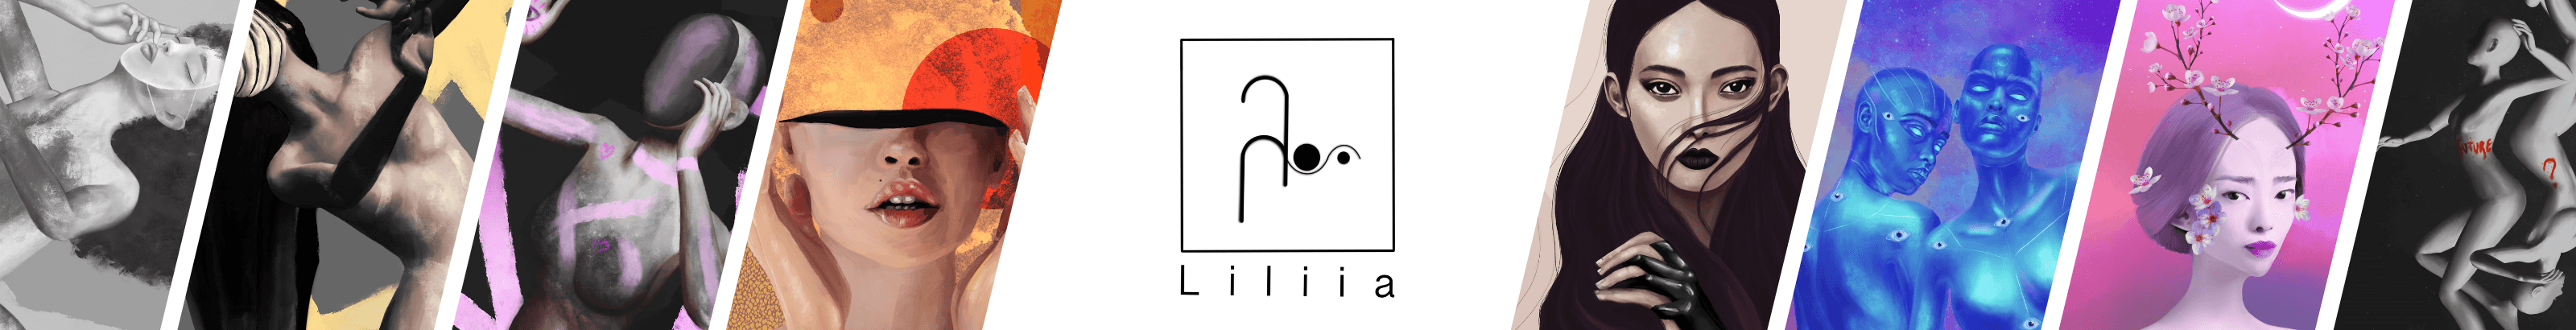 Liliia_eth banner